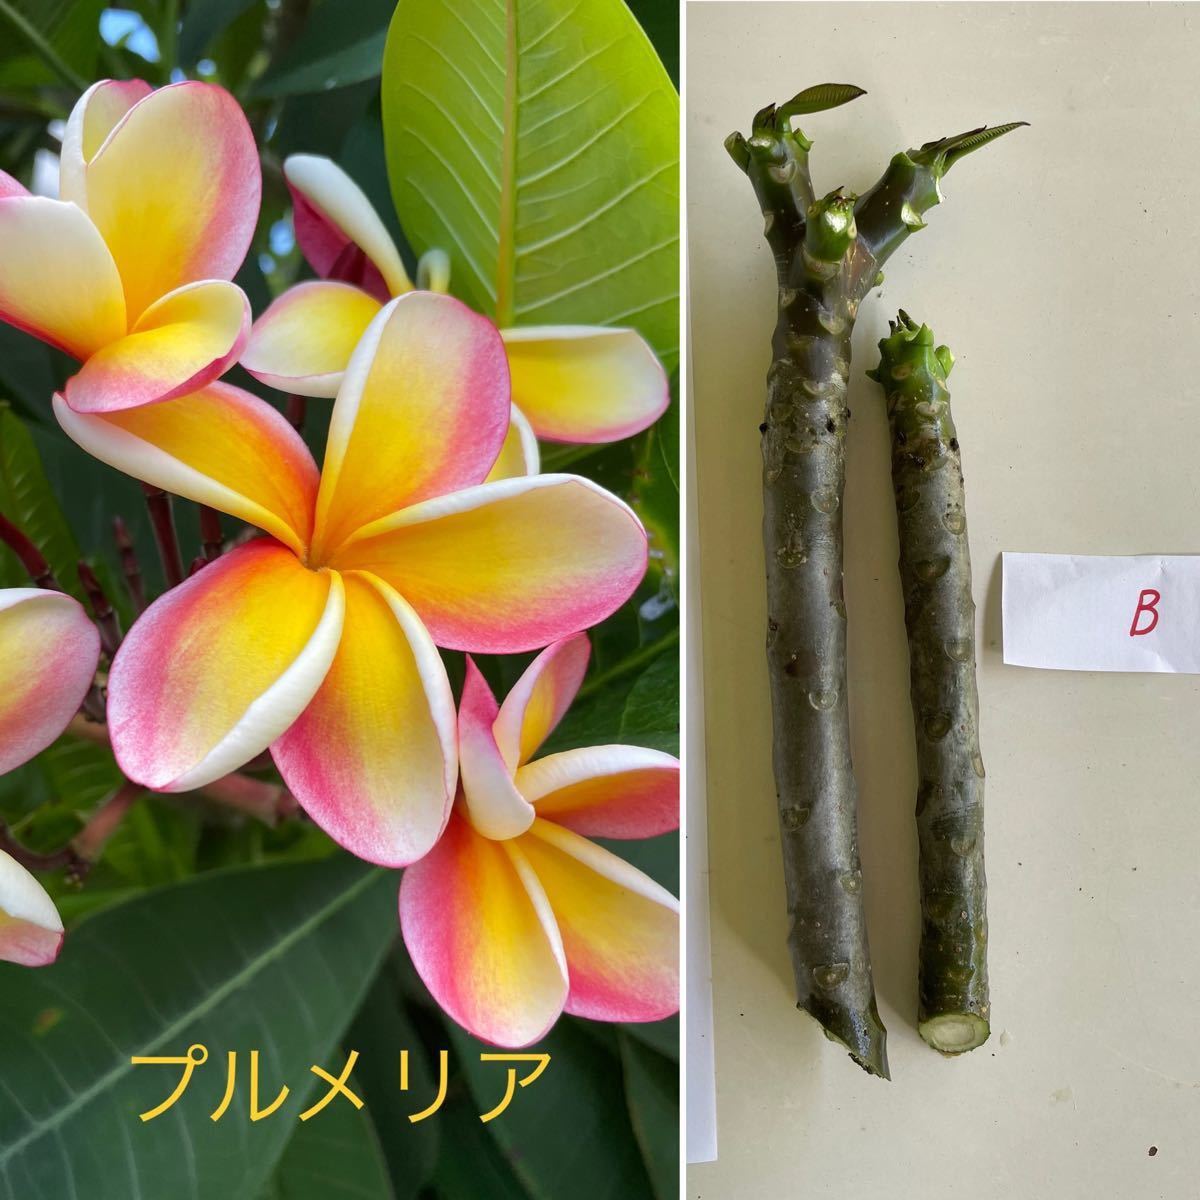 Paypayフリマ プルメリアの挿し木用枝 三股有り1本を含む 2本セット 黄色 ピンク系花 B